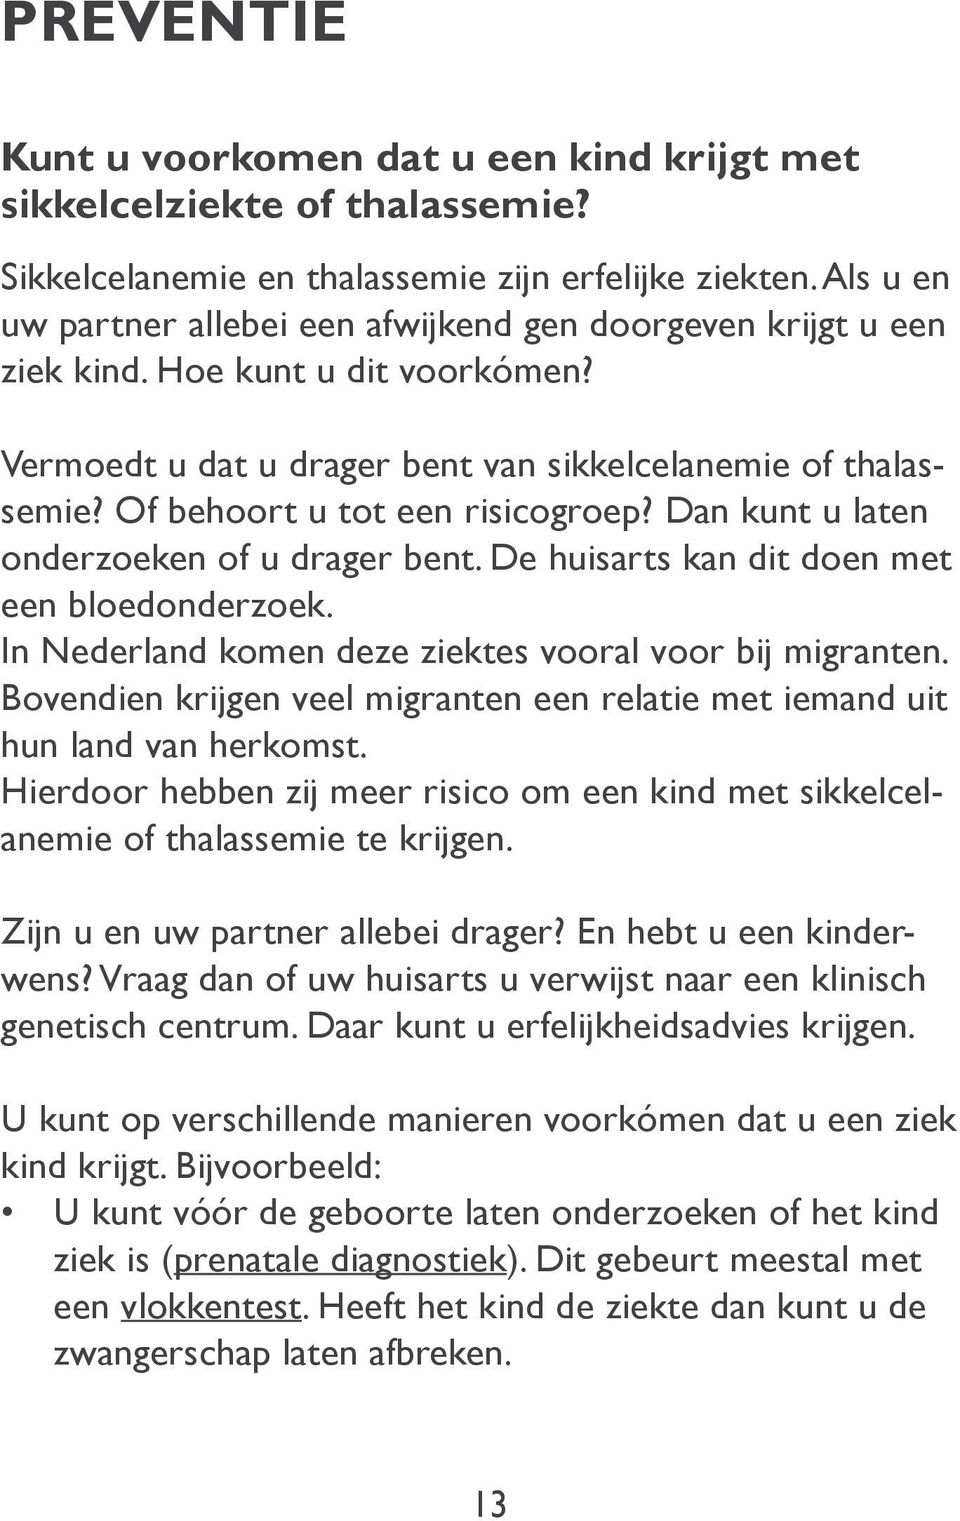 Of behoort u tot een risicogroep? Dan kunt u laten onderzoeken of u drager bent. De huisarts kan dit doen met een bloedonderzoek. In Nederland komen deze ziektes vooral voor bij migranten.